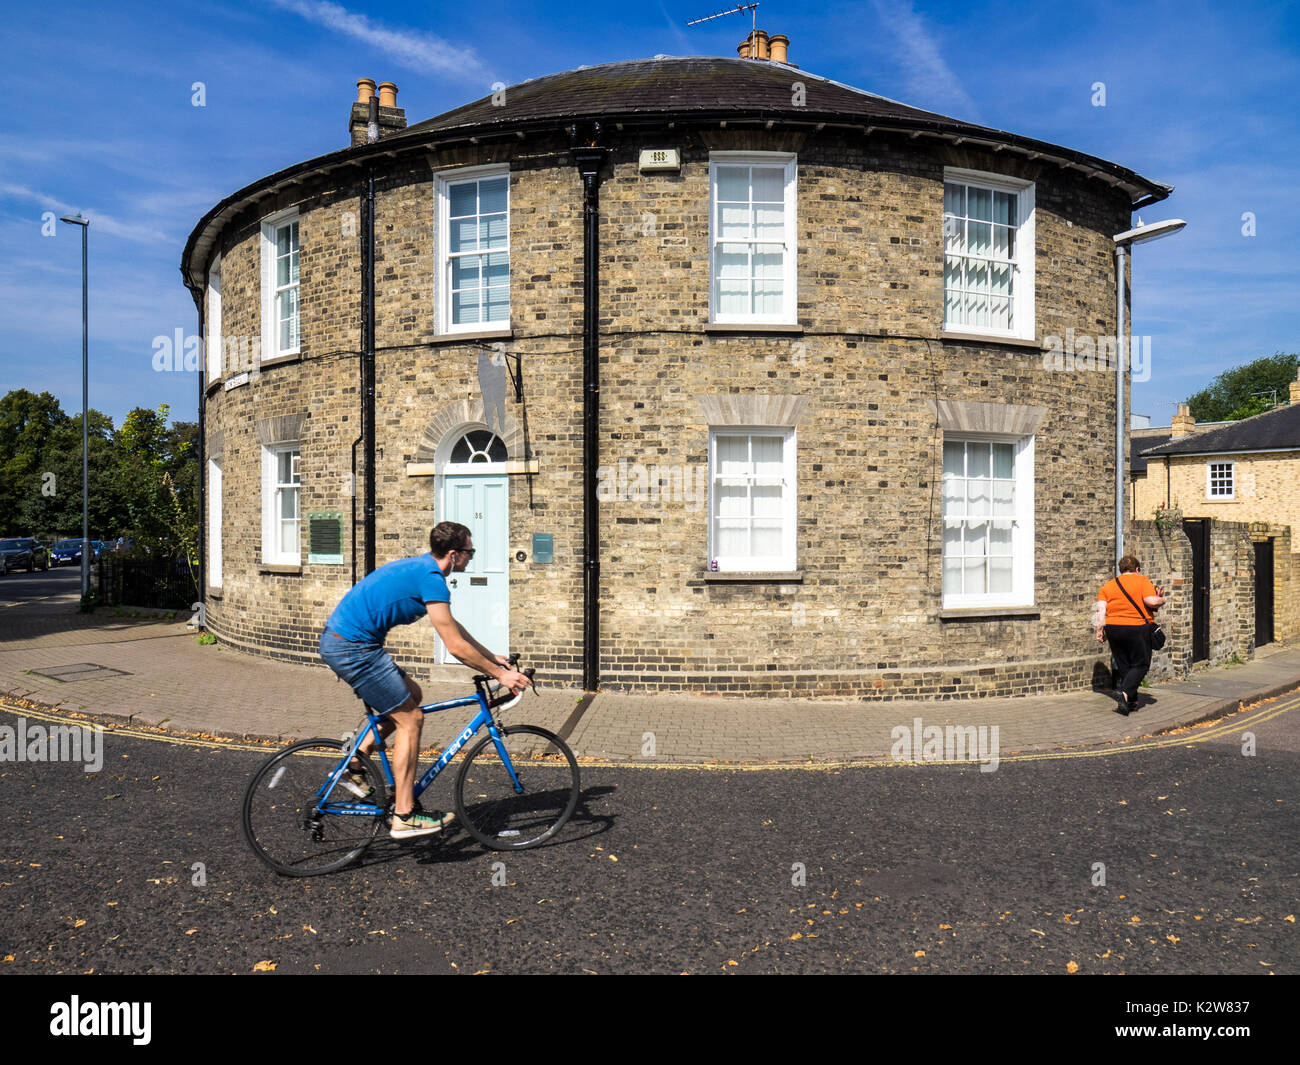 Runde Fassade Haus in Cambridge Großbritannien - ein Radfahrer übergibt ein rundes Gebäude mit Glasfassade in neuen Square, Cambridge UK Stockfoto